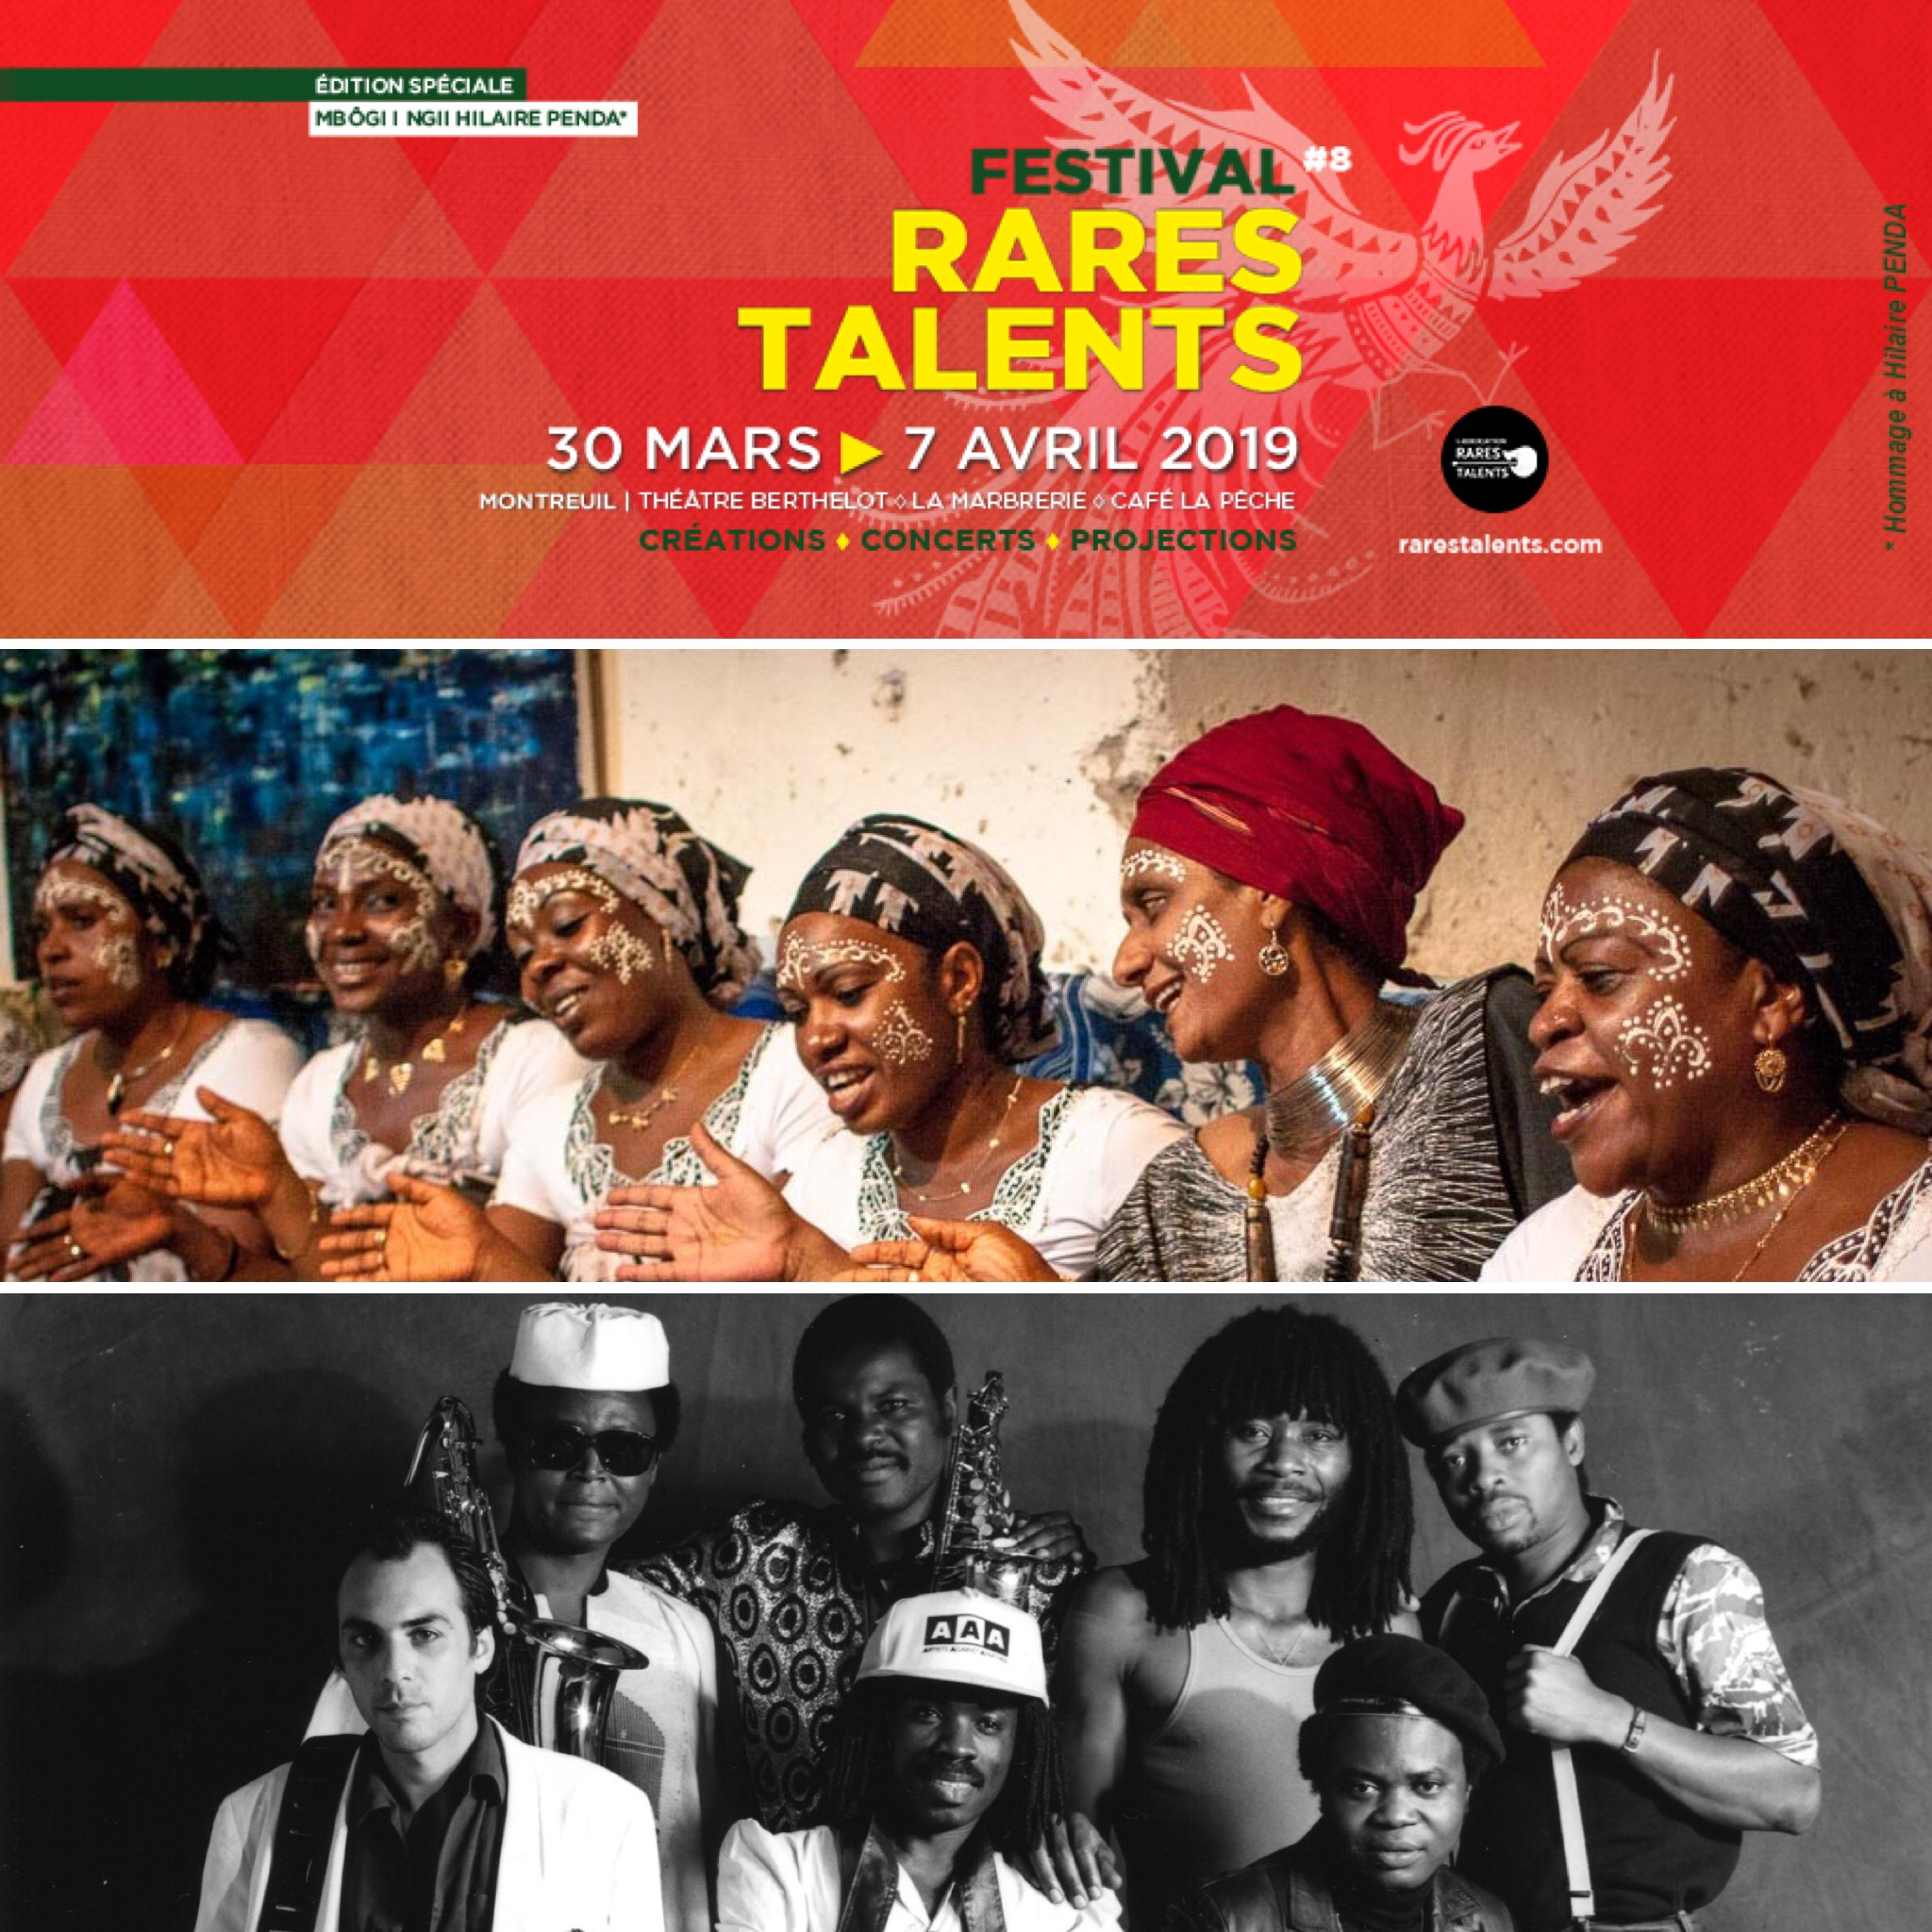 DOCUS > Ghetto Blaster + Nawal et les femmes de la lune ✫ Festival Rares Talents #8